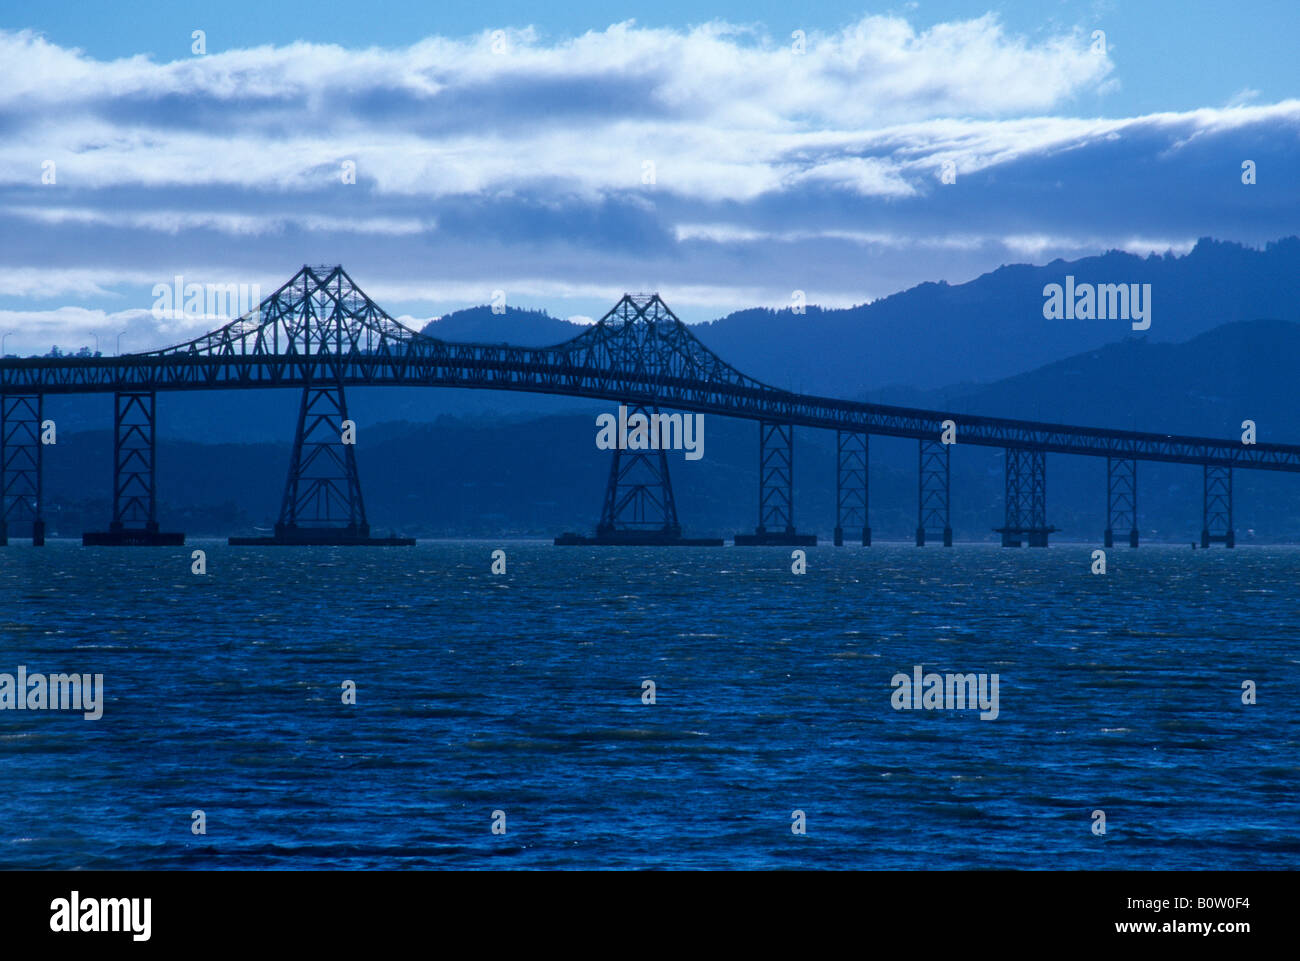 Tintado azul vista del puente Richmond-San Rafeal, área metropolitana de San Francisco, California, EE.UU. Foto de stock